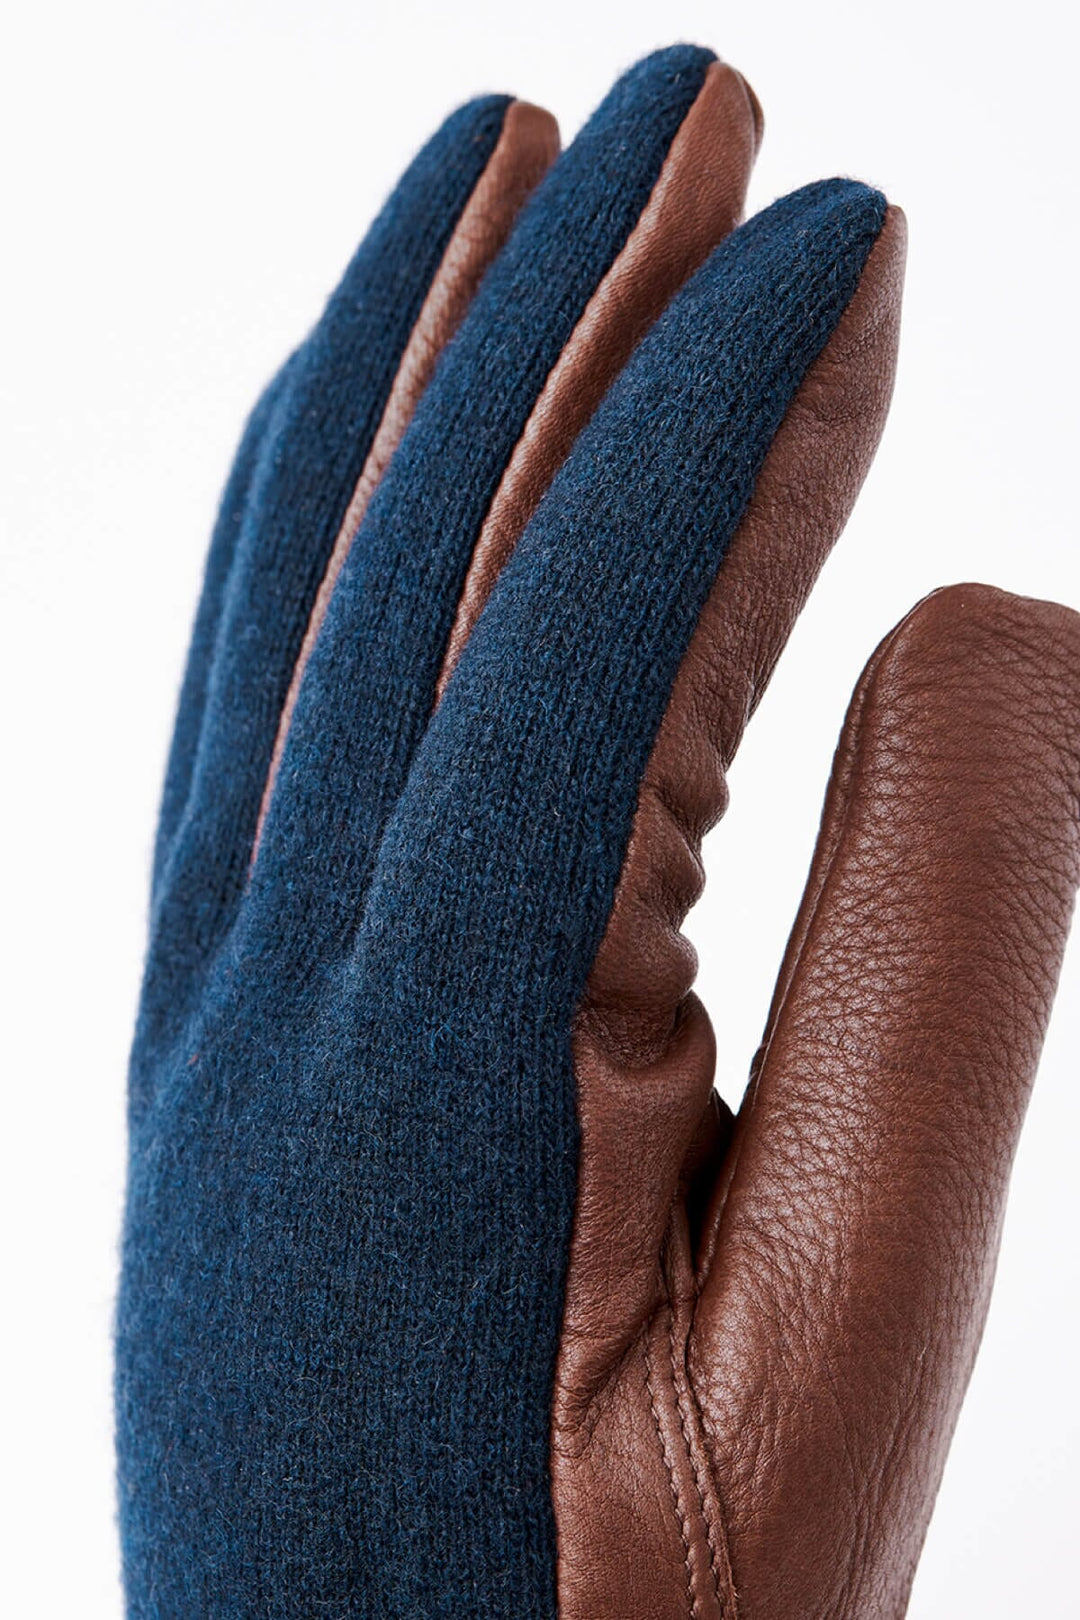 Gant de daim et tricot de laine Homme - Accessoires - Gants - Gants de cuir Hestra